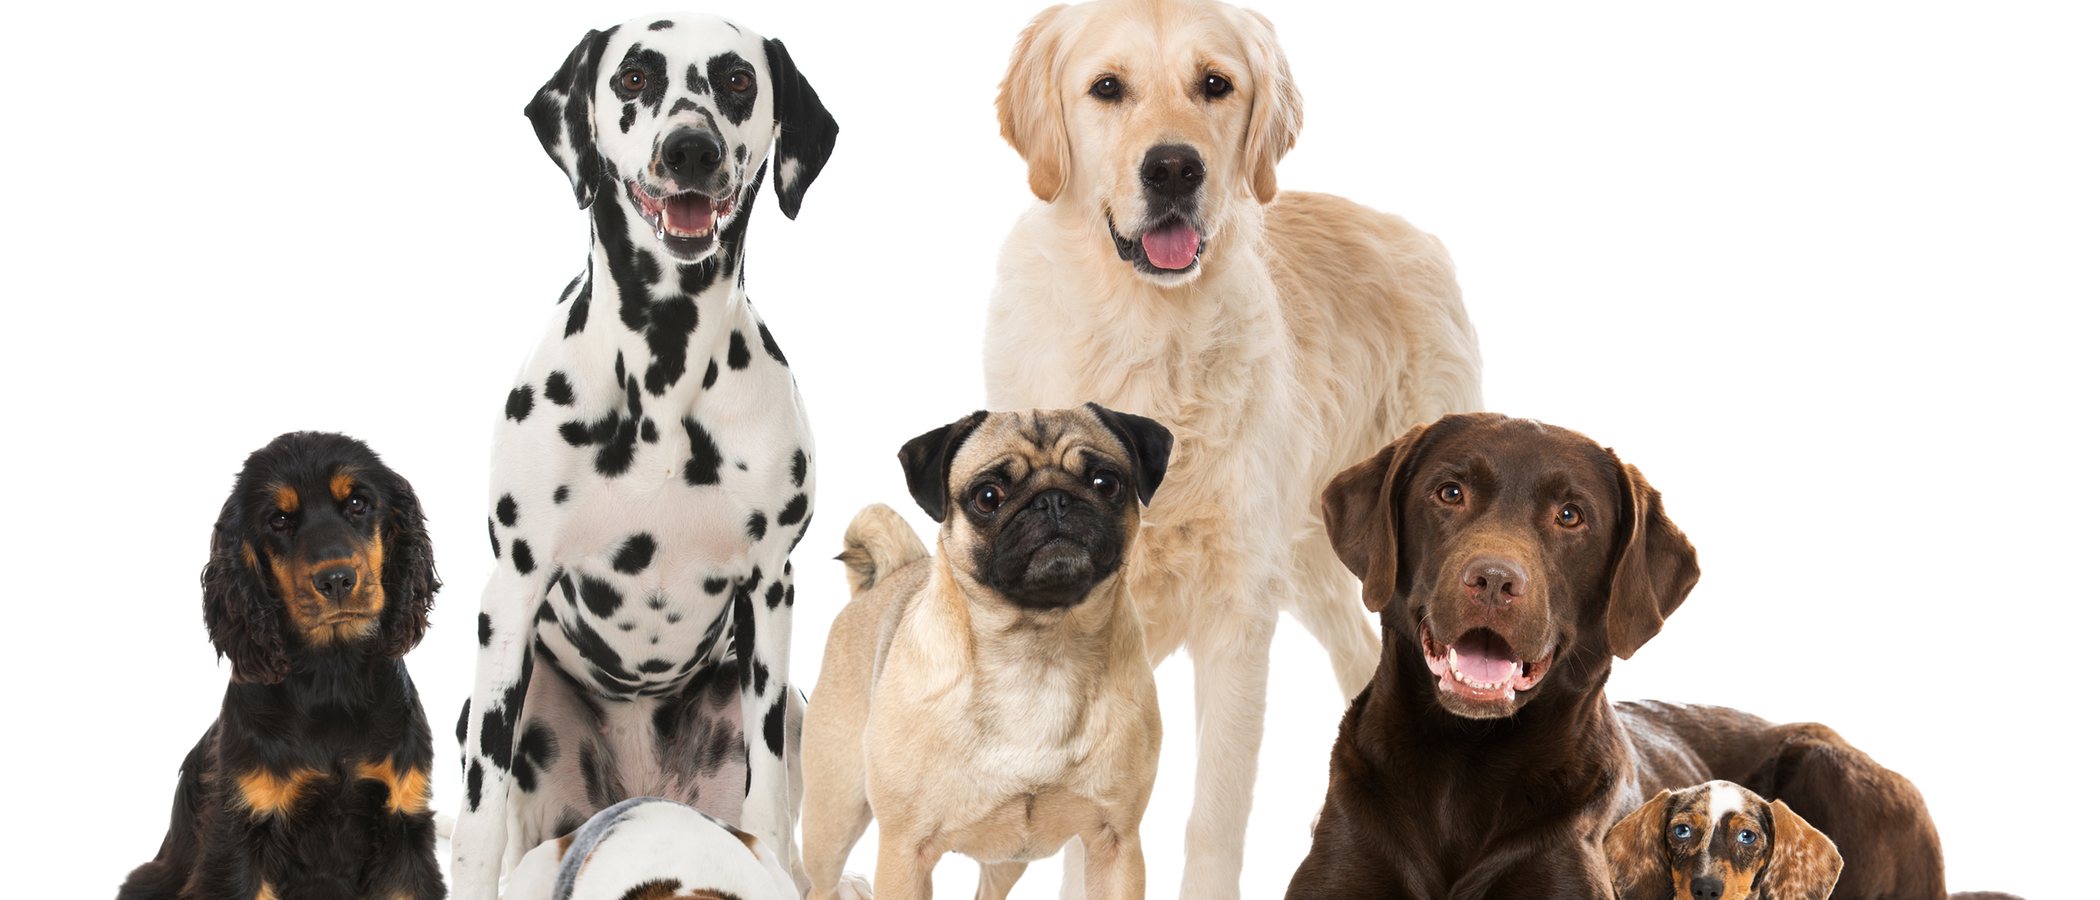 Clasificación de razas de perro por continente: Europa